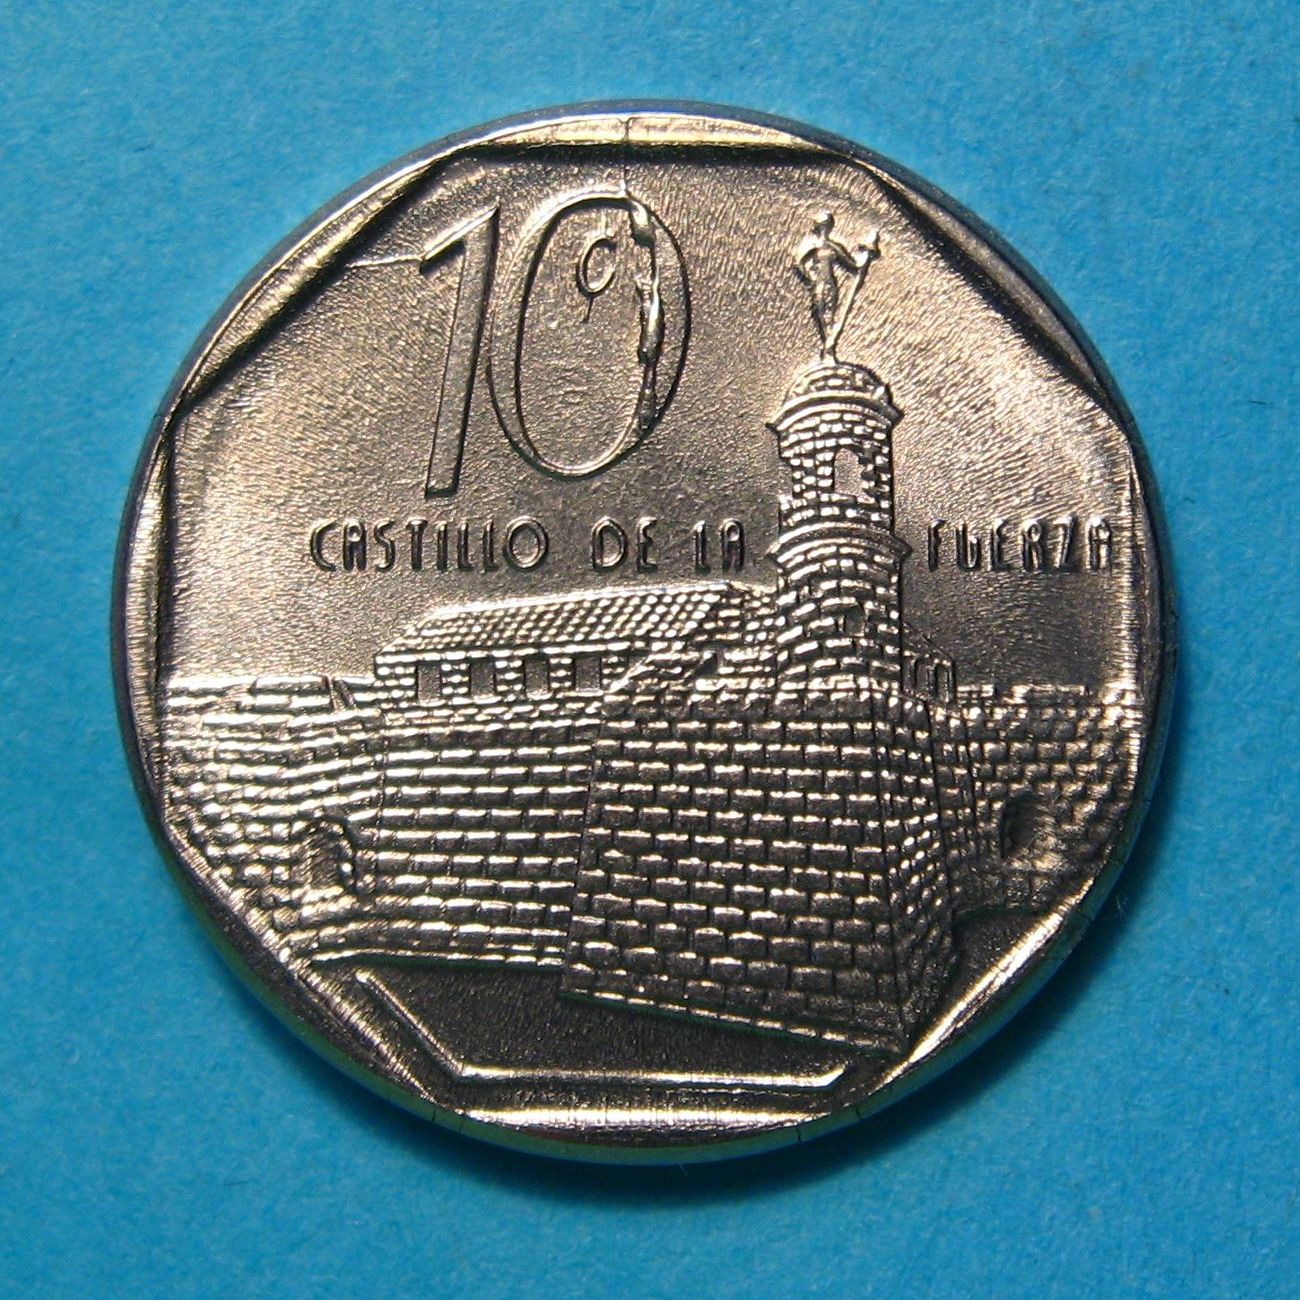 10 centavos 2016 Cuba.jpg